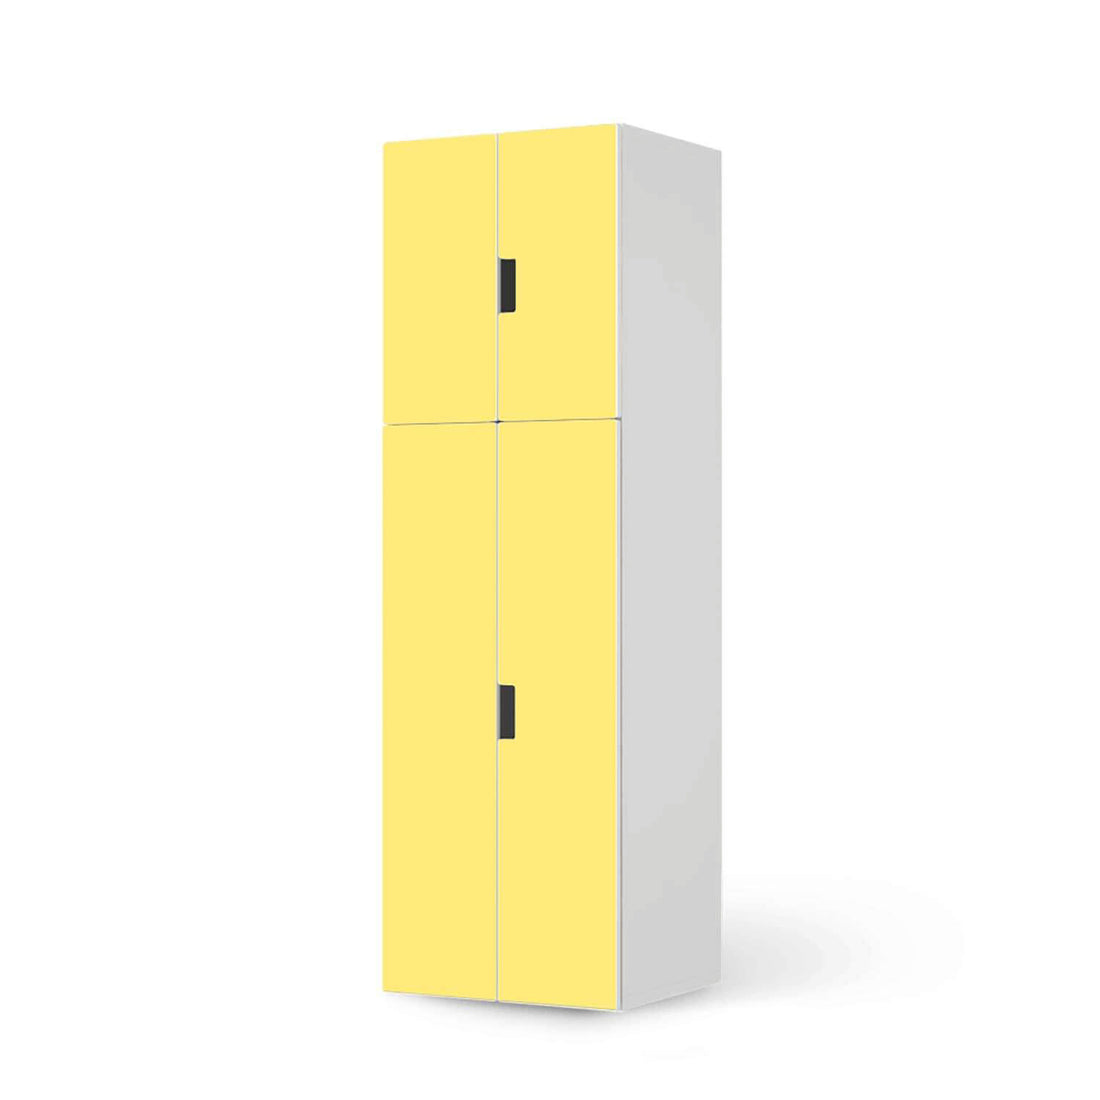 Selbstklebende Folie Gelb Light - IKEA Stuva kombiniert - 2 große Türen und 2 kleine Türen (Kombination 2)  - weiss